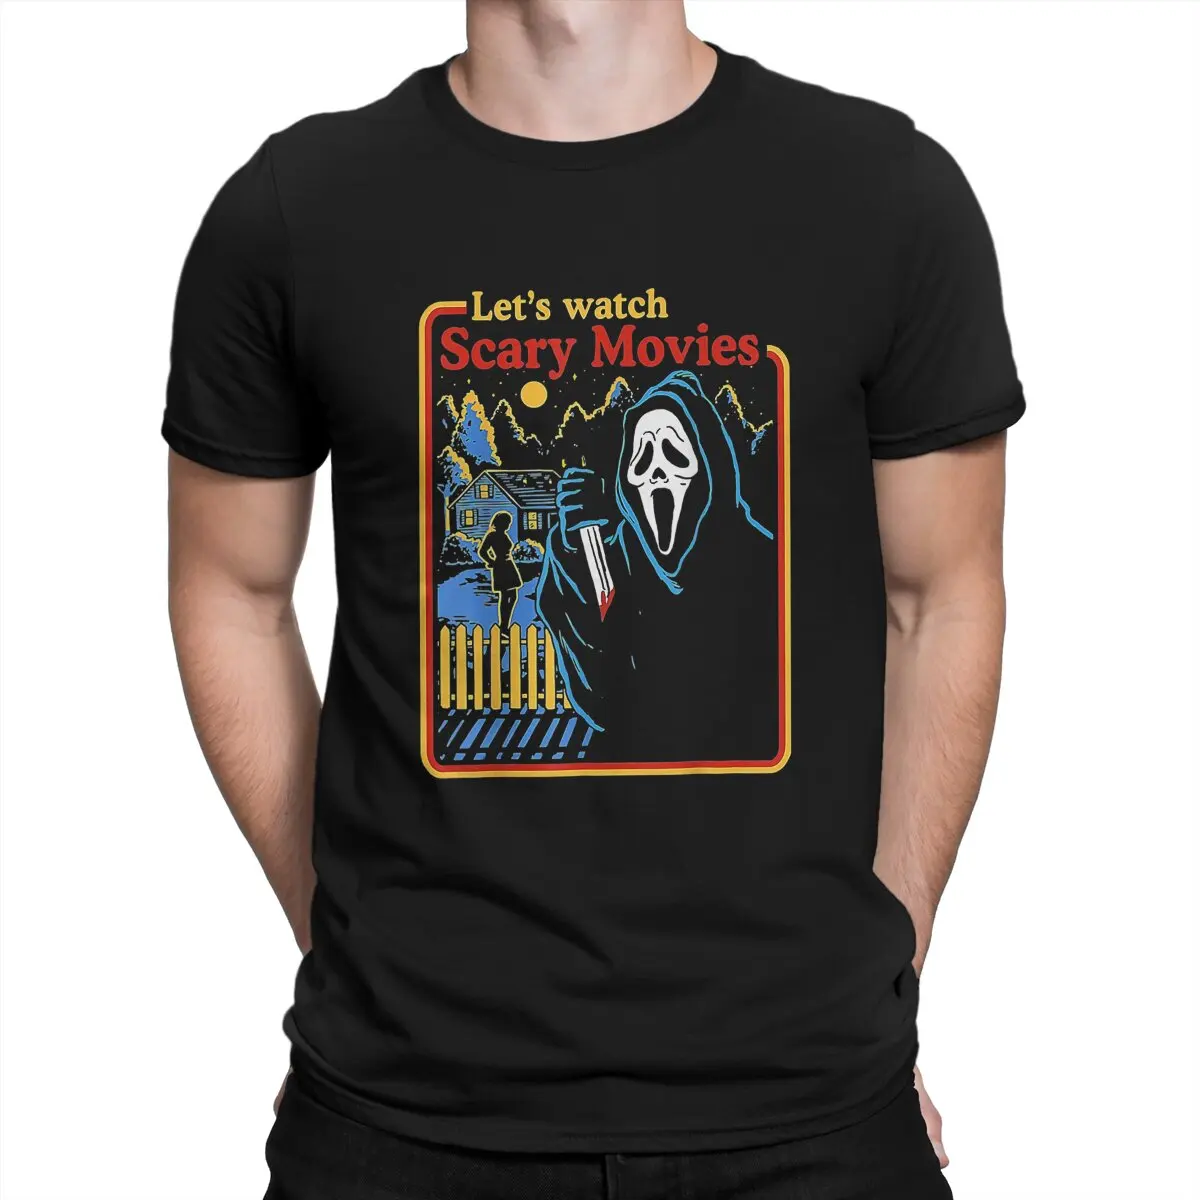 

Scream Horror Movie Newest TShirt for Men Watch Scary Movies Round Neck Pure Cotton T Shirt Distinctive OutdoorWear